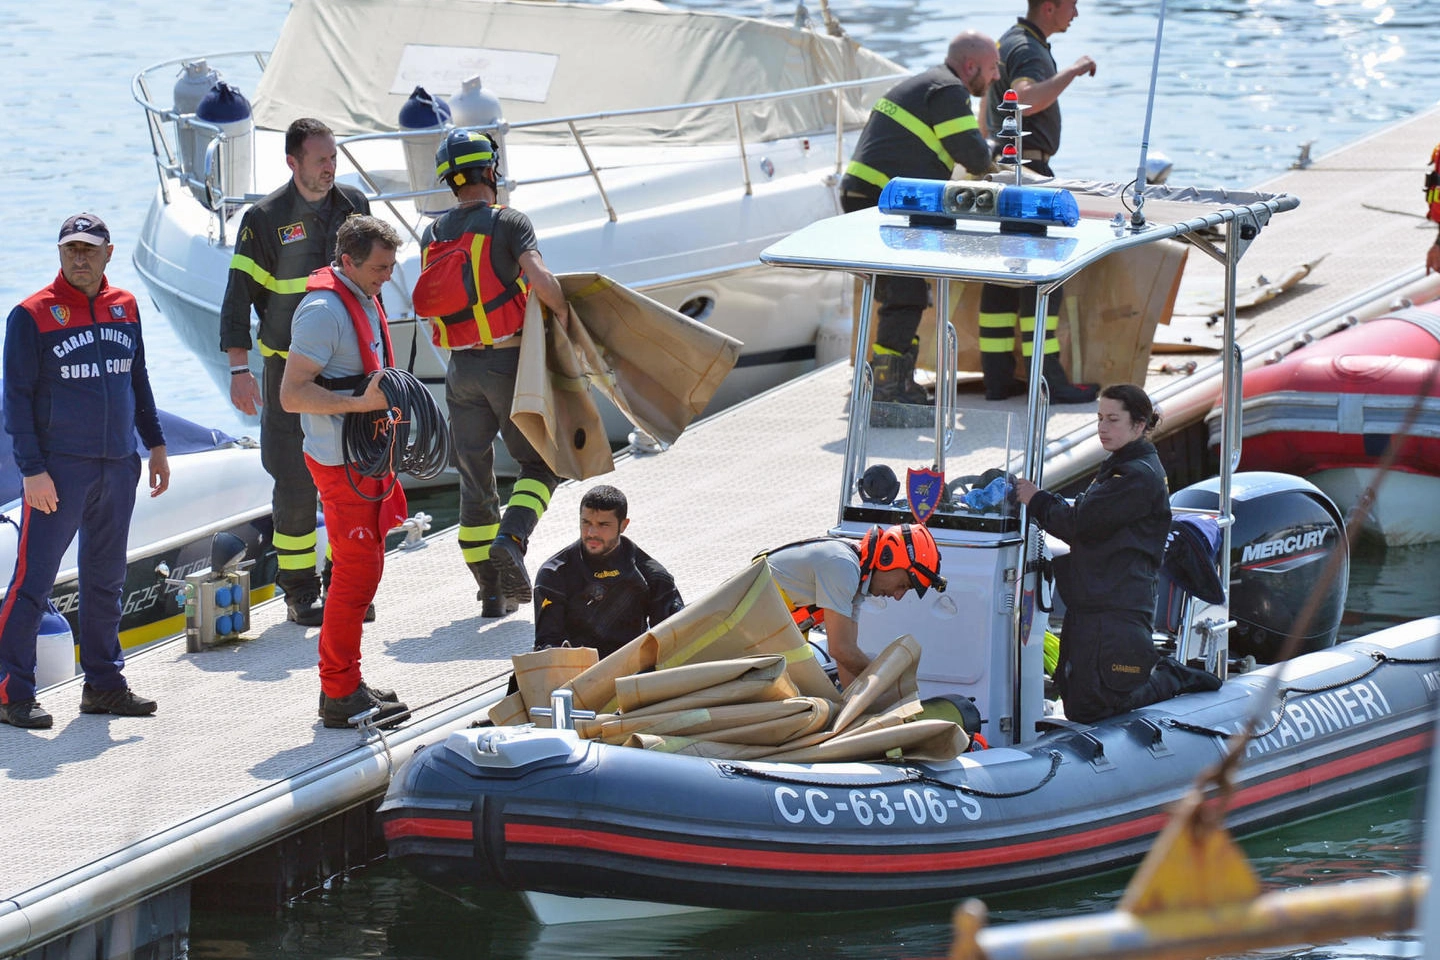 Le operazioni di recupero sul lago Maggiore nelle acque di Sesto Calende (Varese)